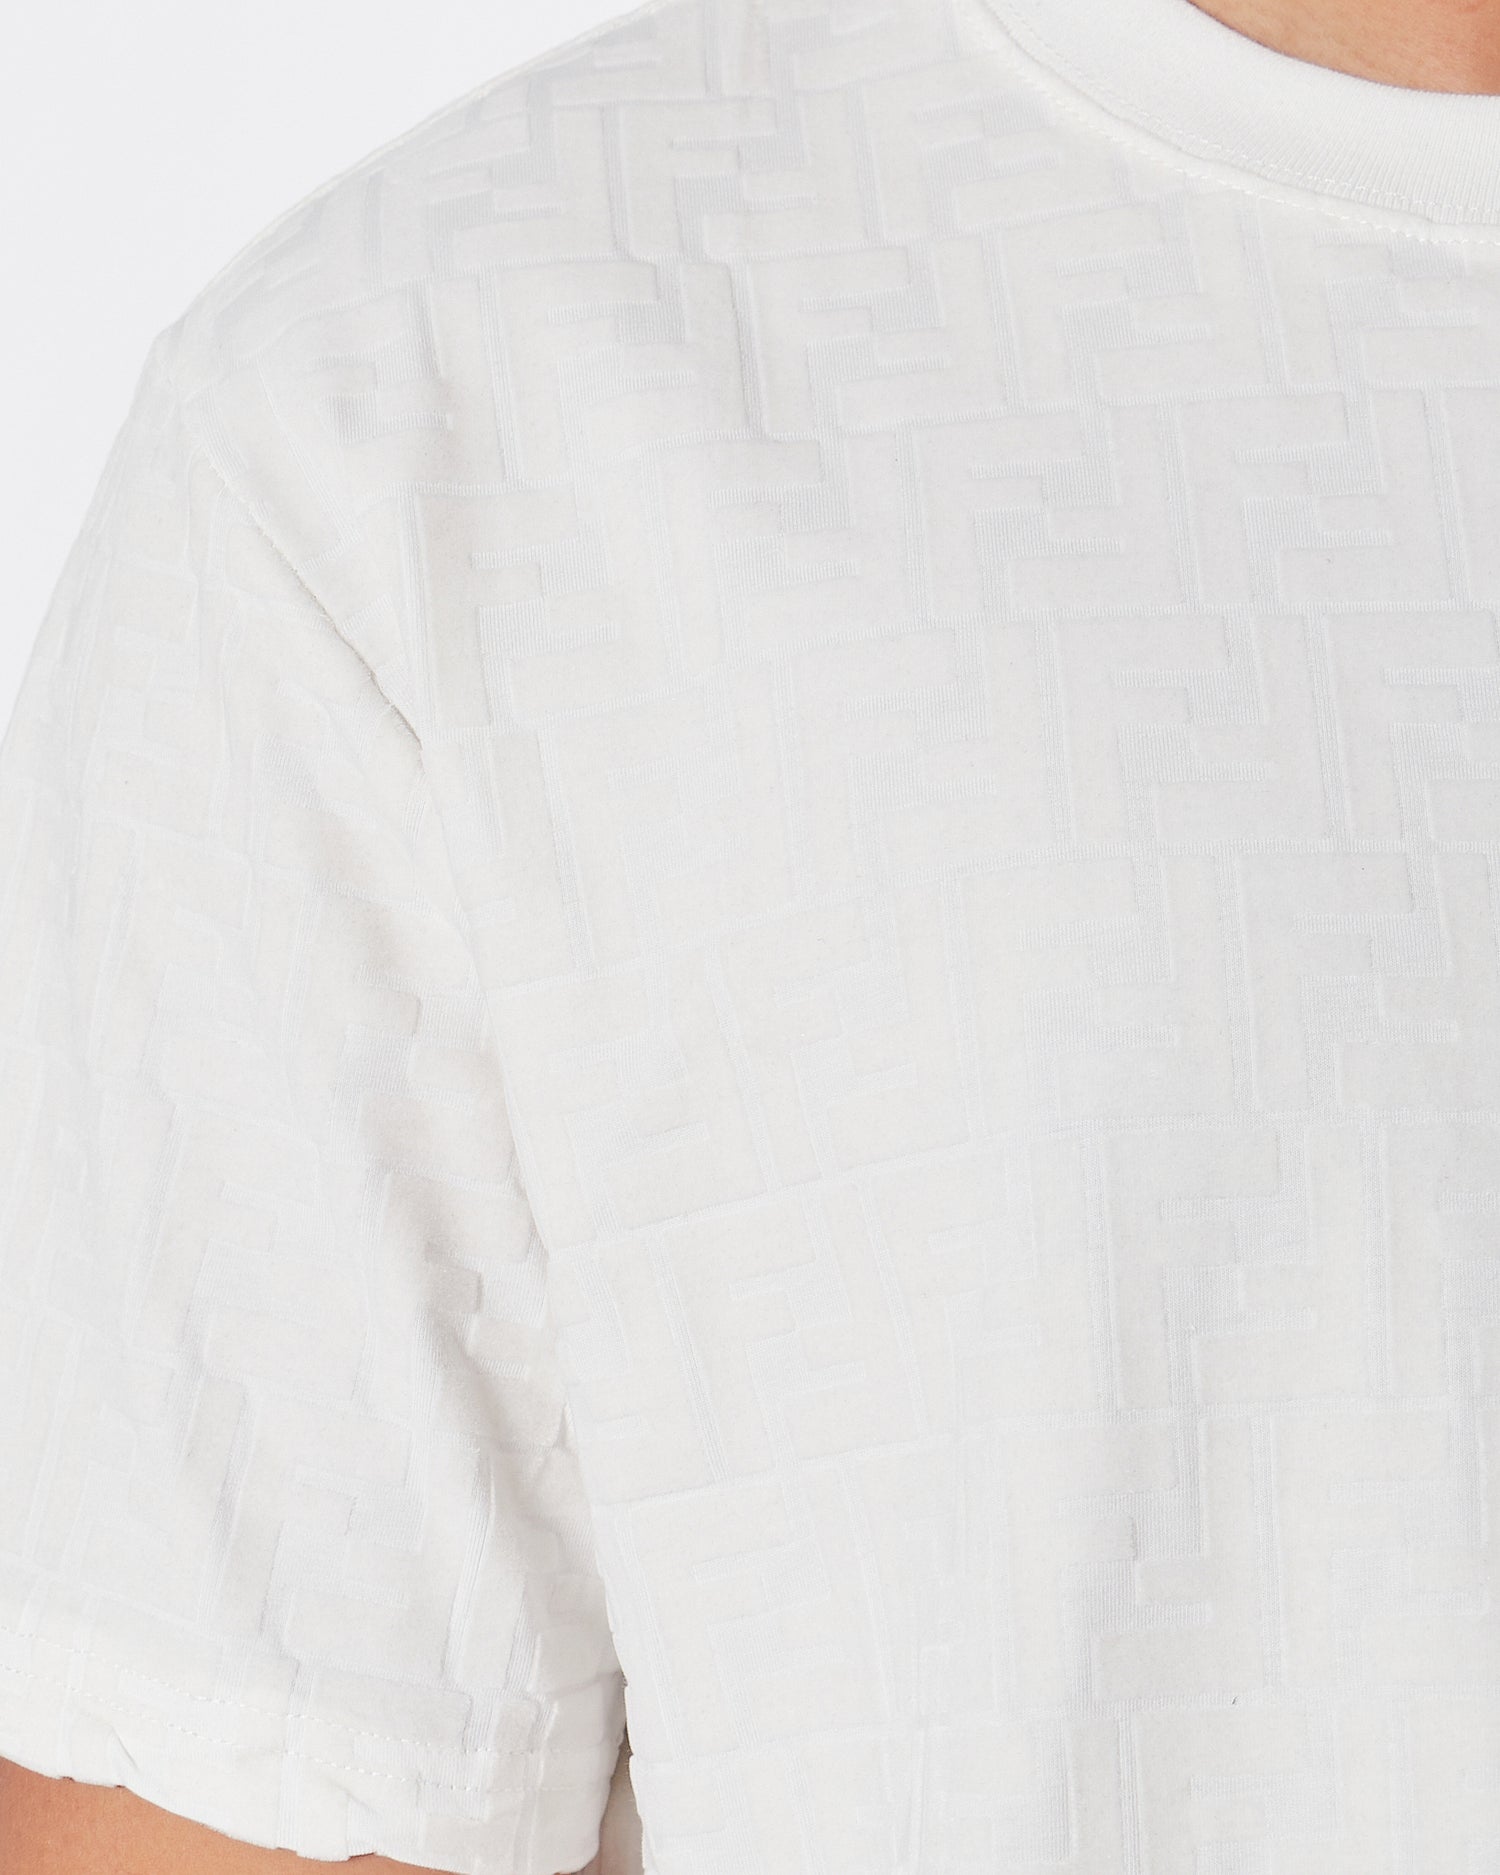 LV Monogram Embossed Over Printed Men White T-Shirt 22.90